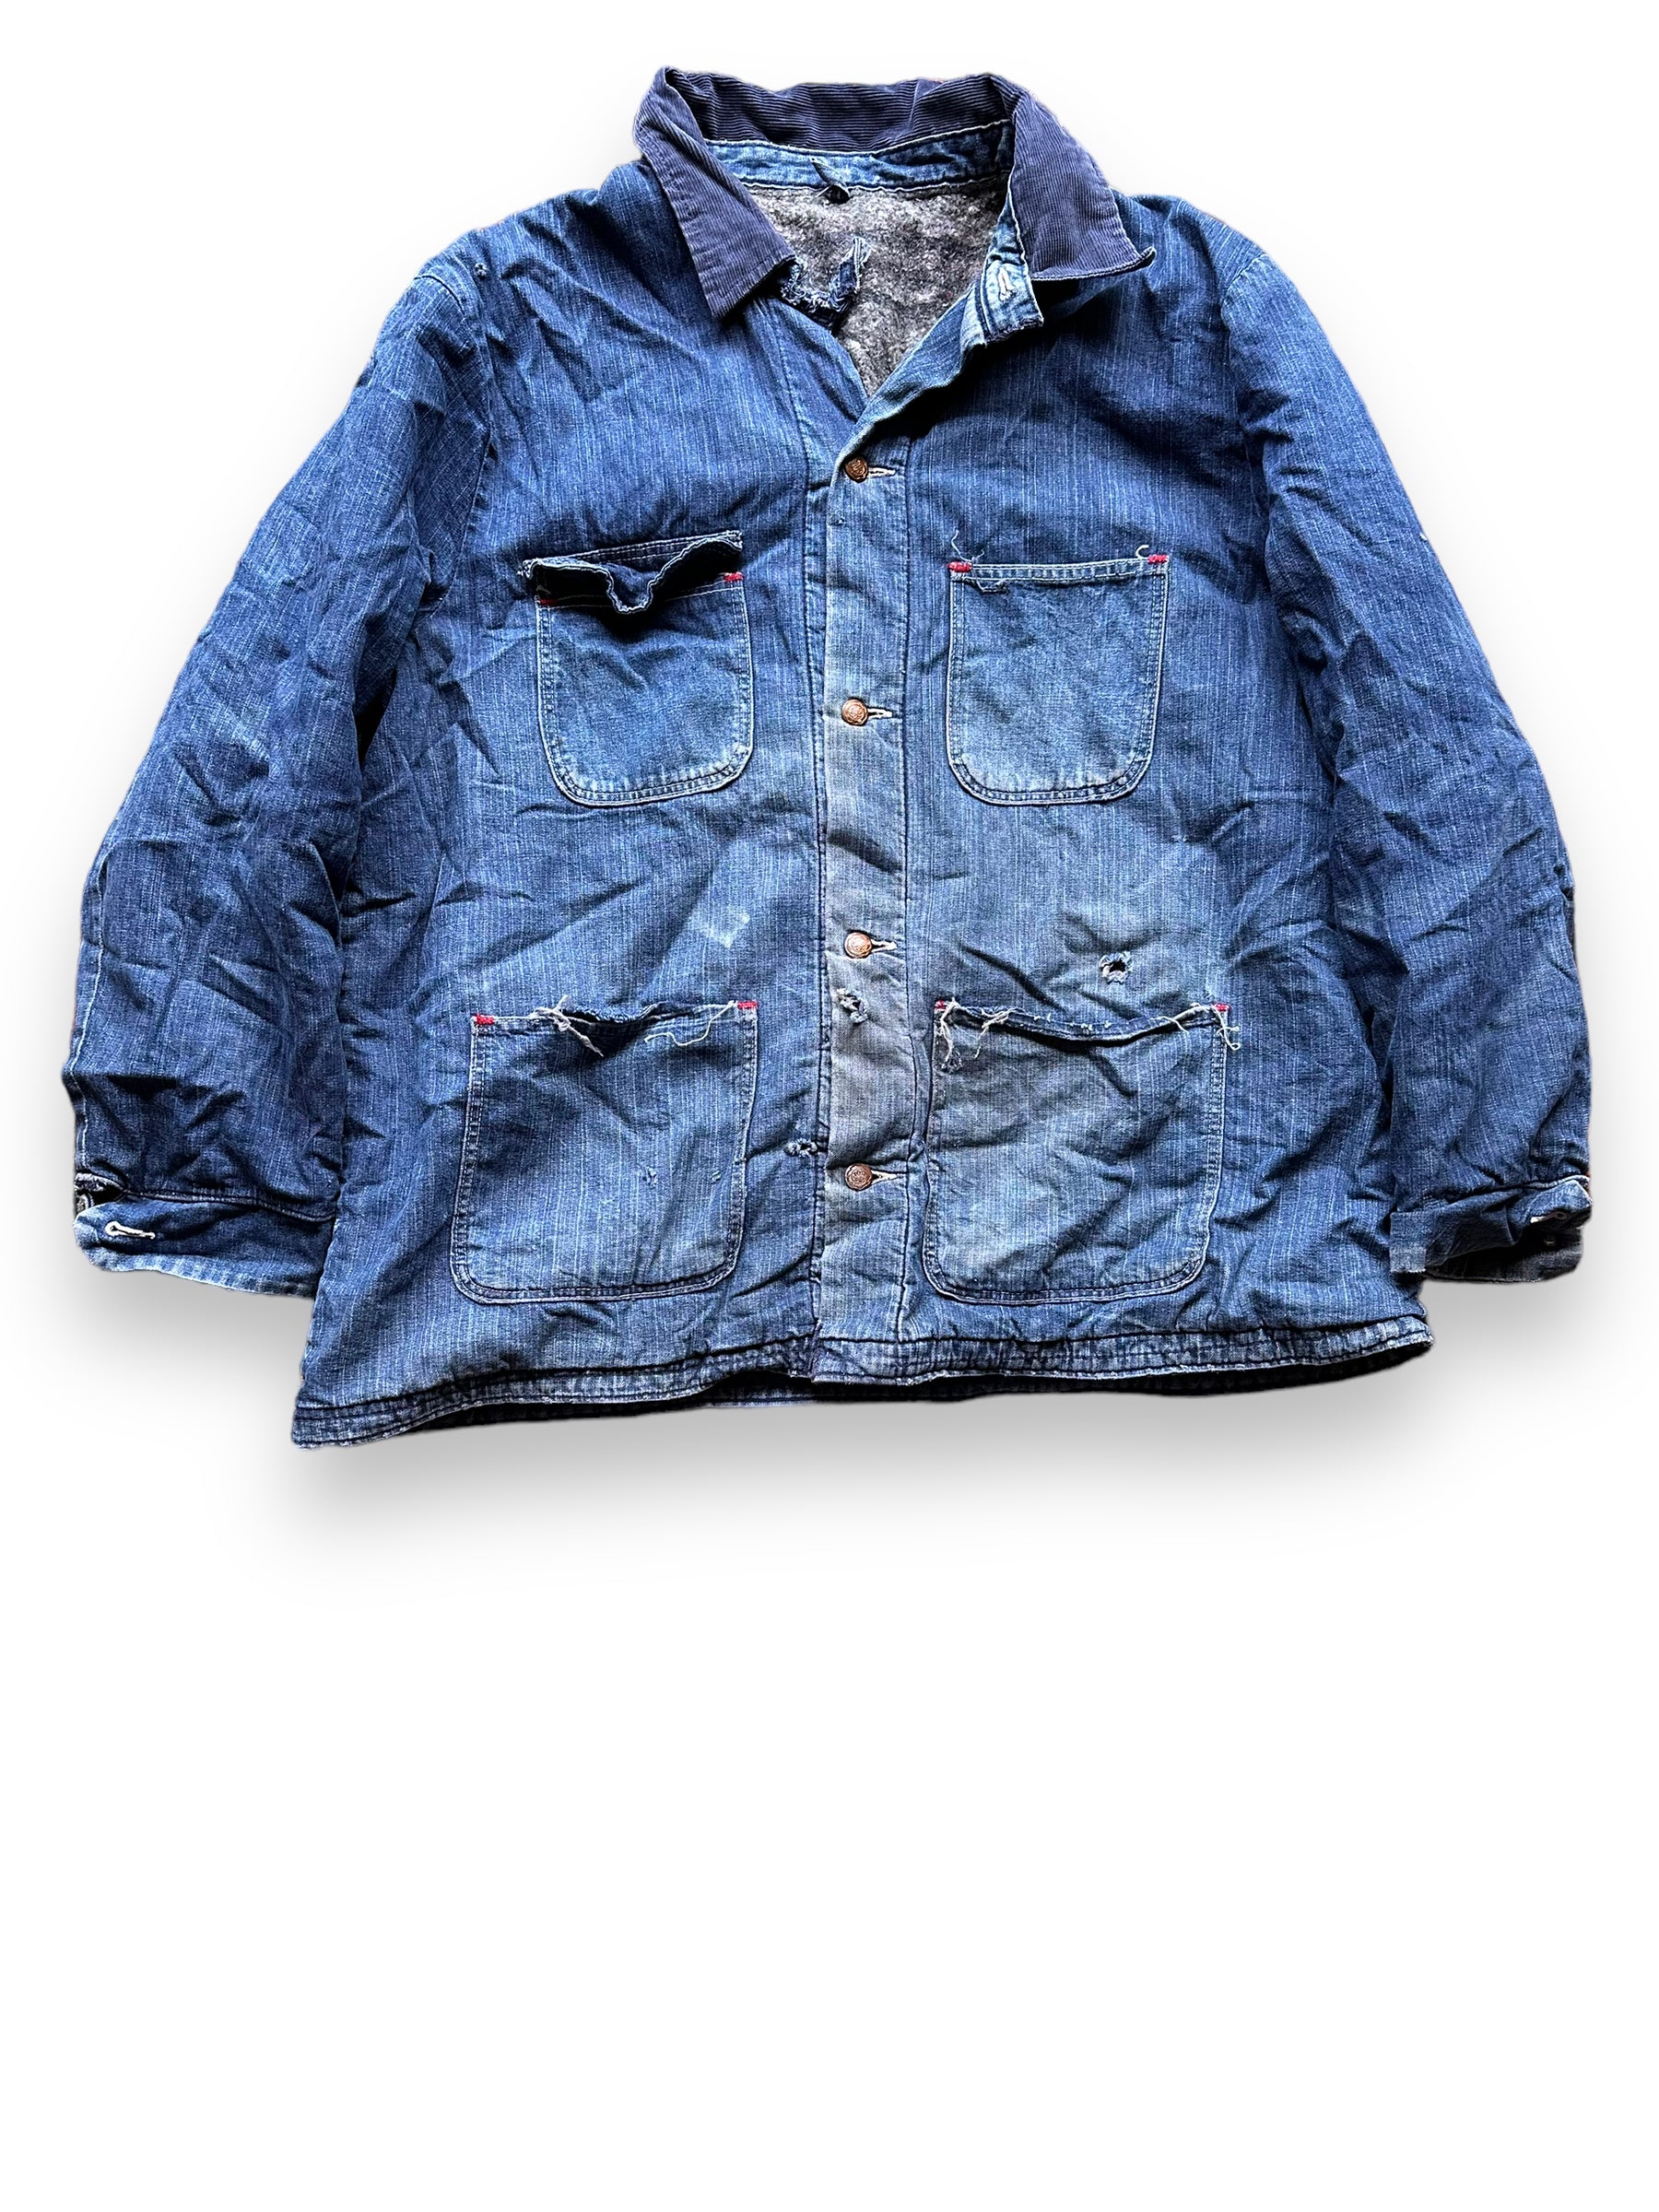 Front View of Vintage Blanket Lined Wrangler Blue Bell Chore Coat SZ 50 | Vintage Denim Jacket Seattle | Seattle Vintage Clothing